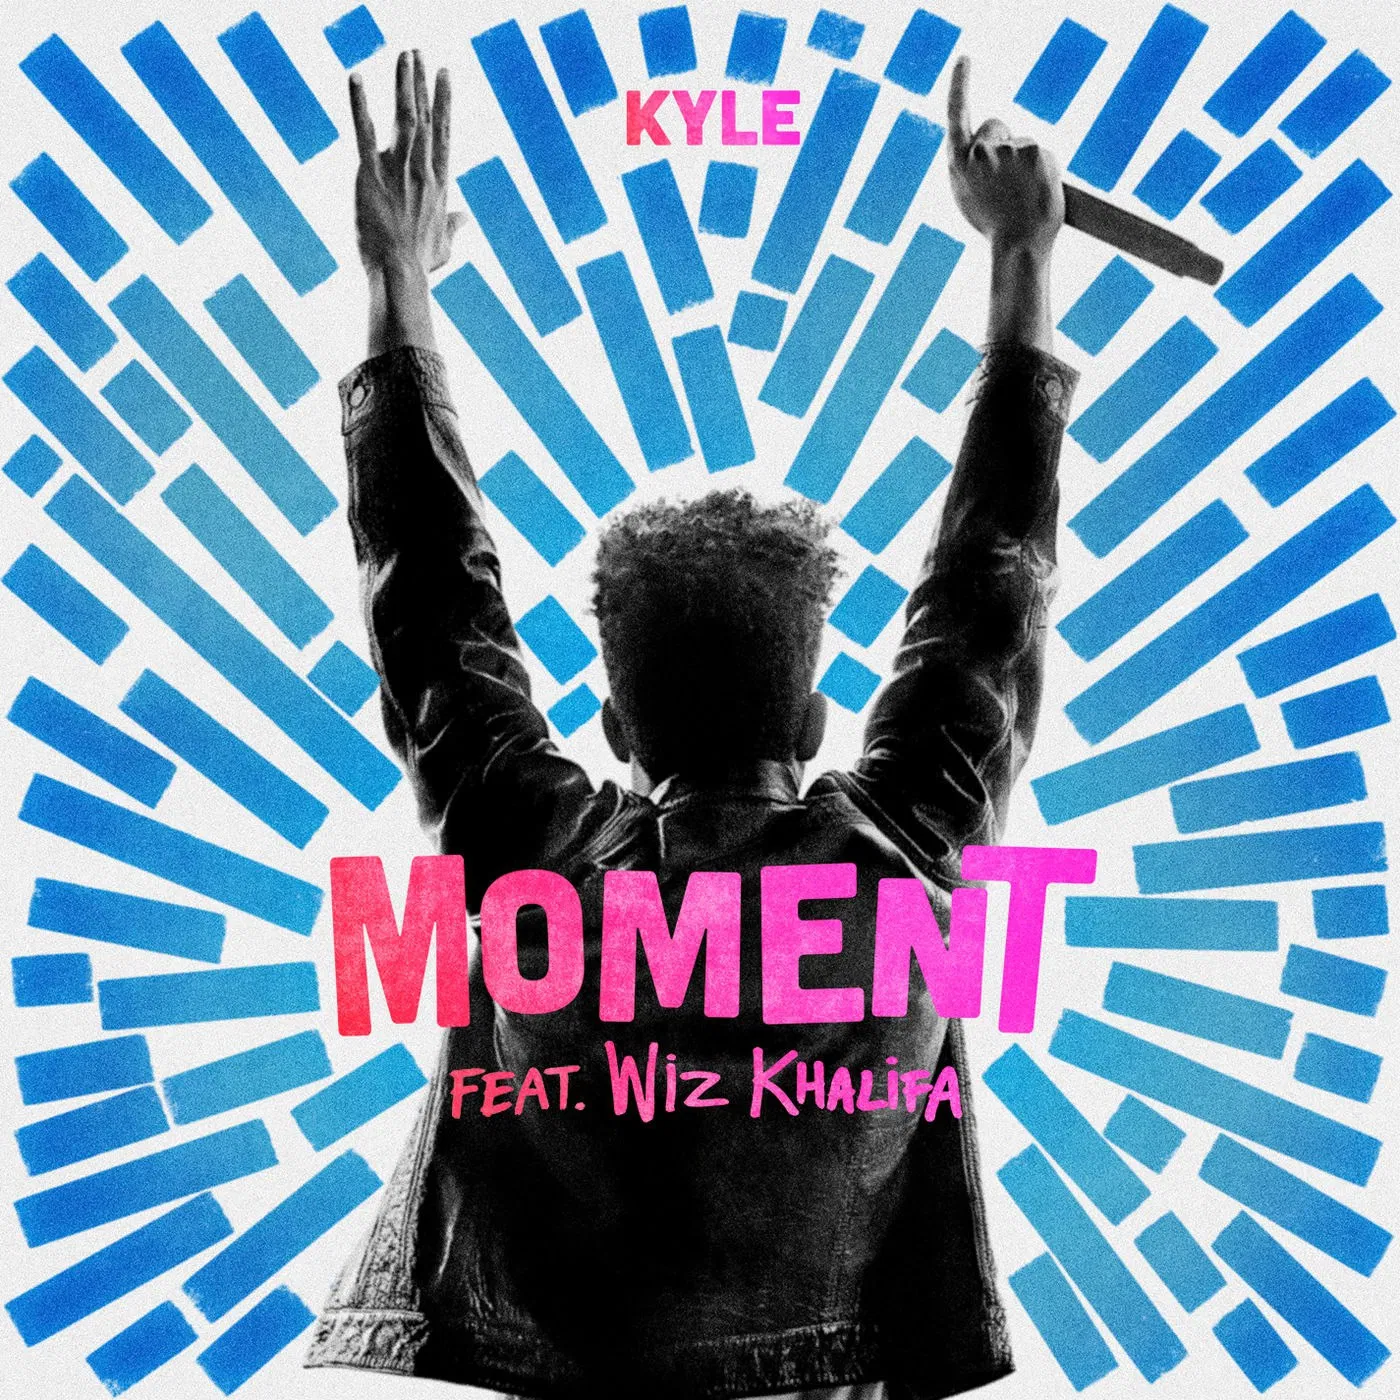 KYLE - Moment Ft. Wiz Khalifa